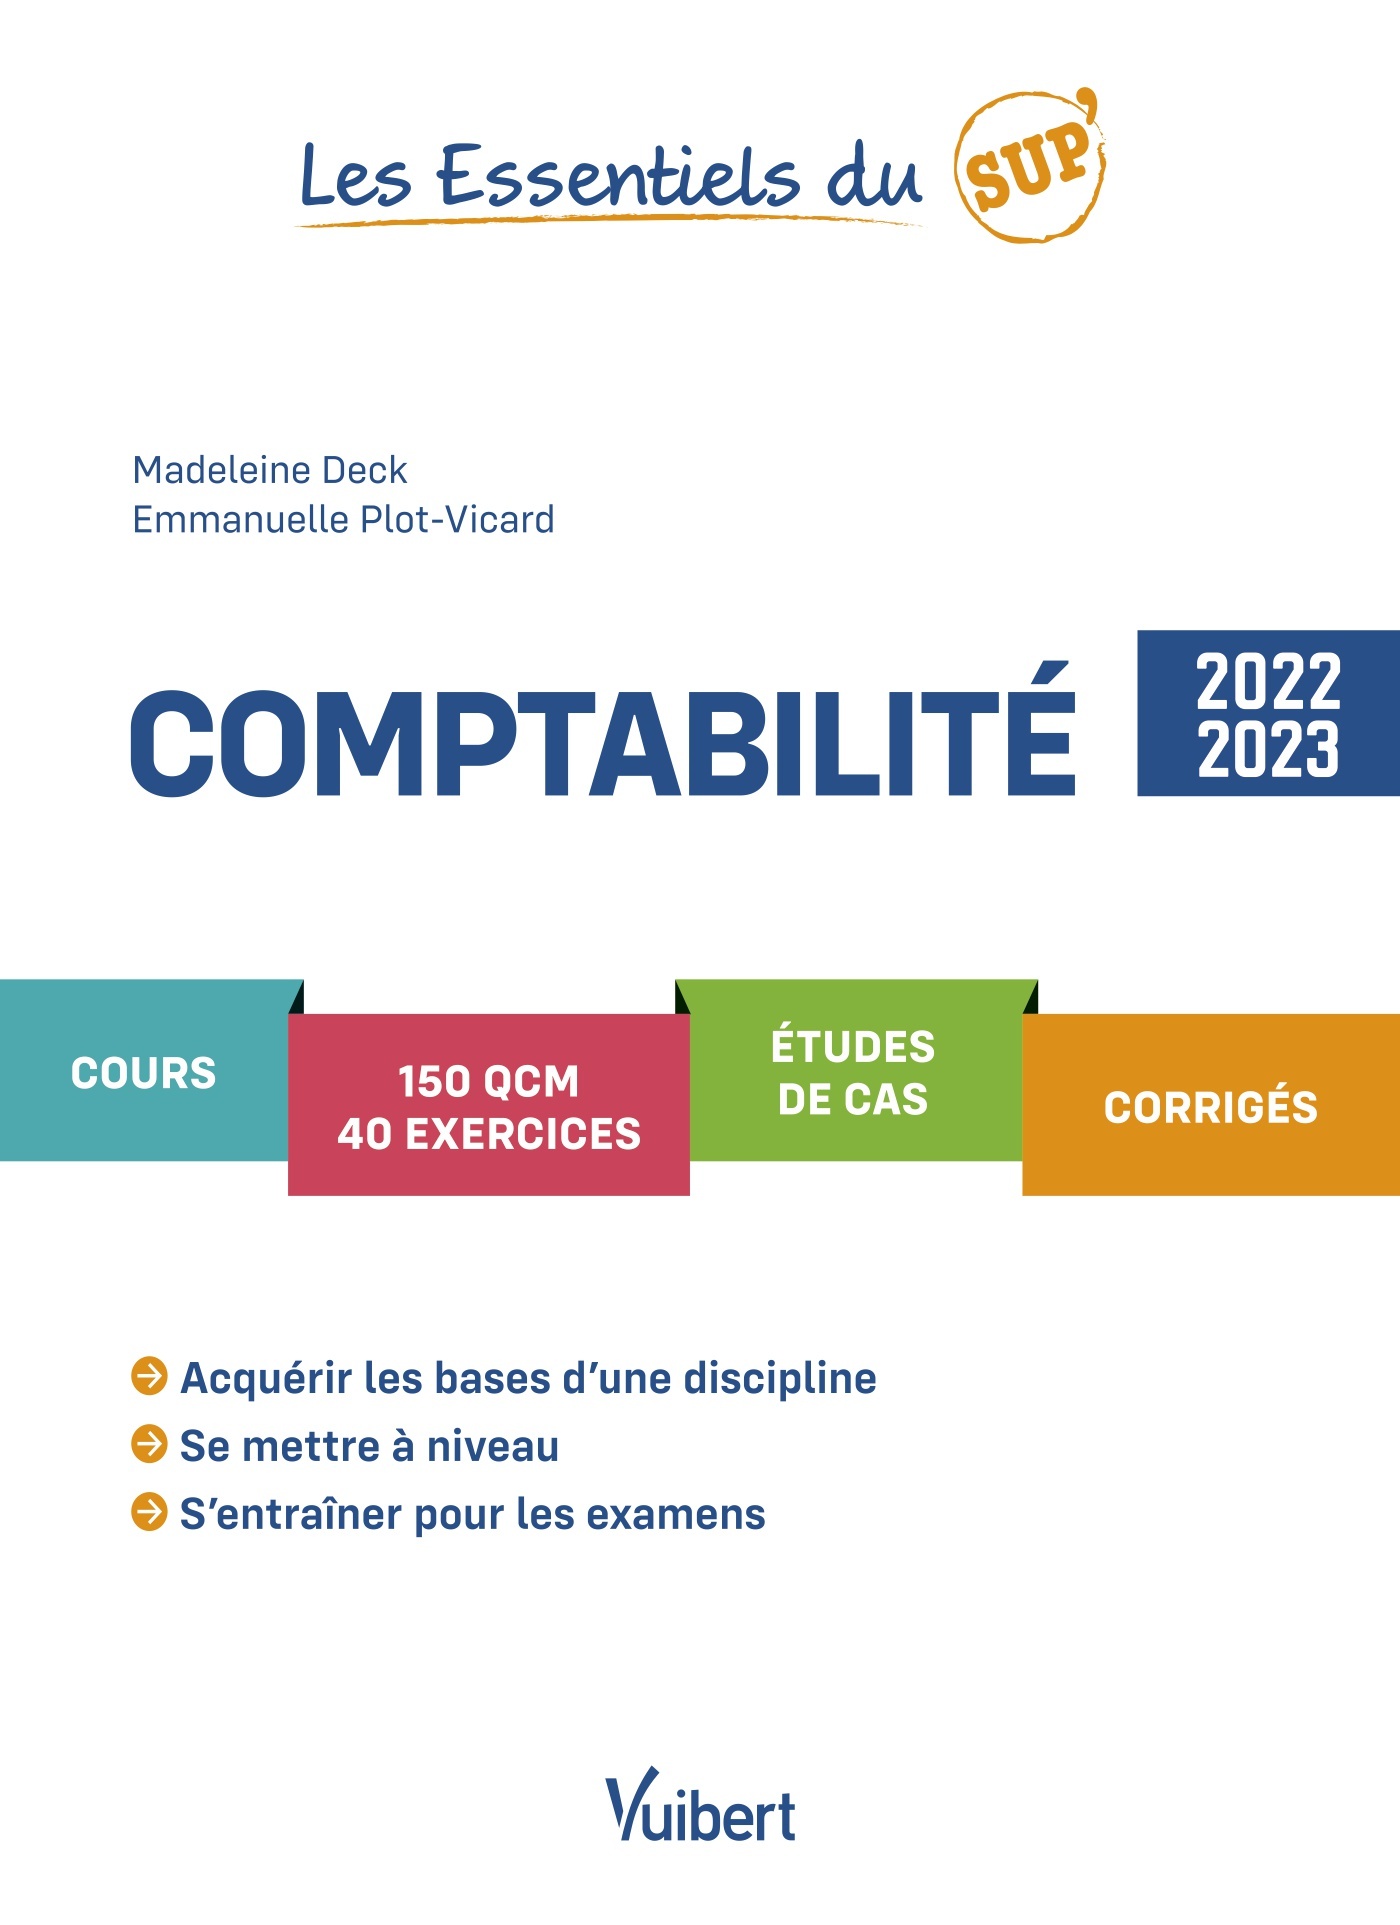 Comptabilité 2022/2023 | Vuibert